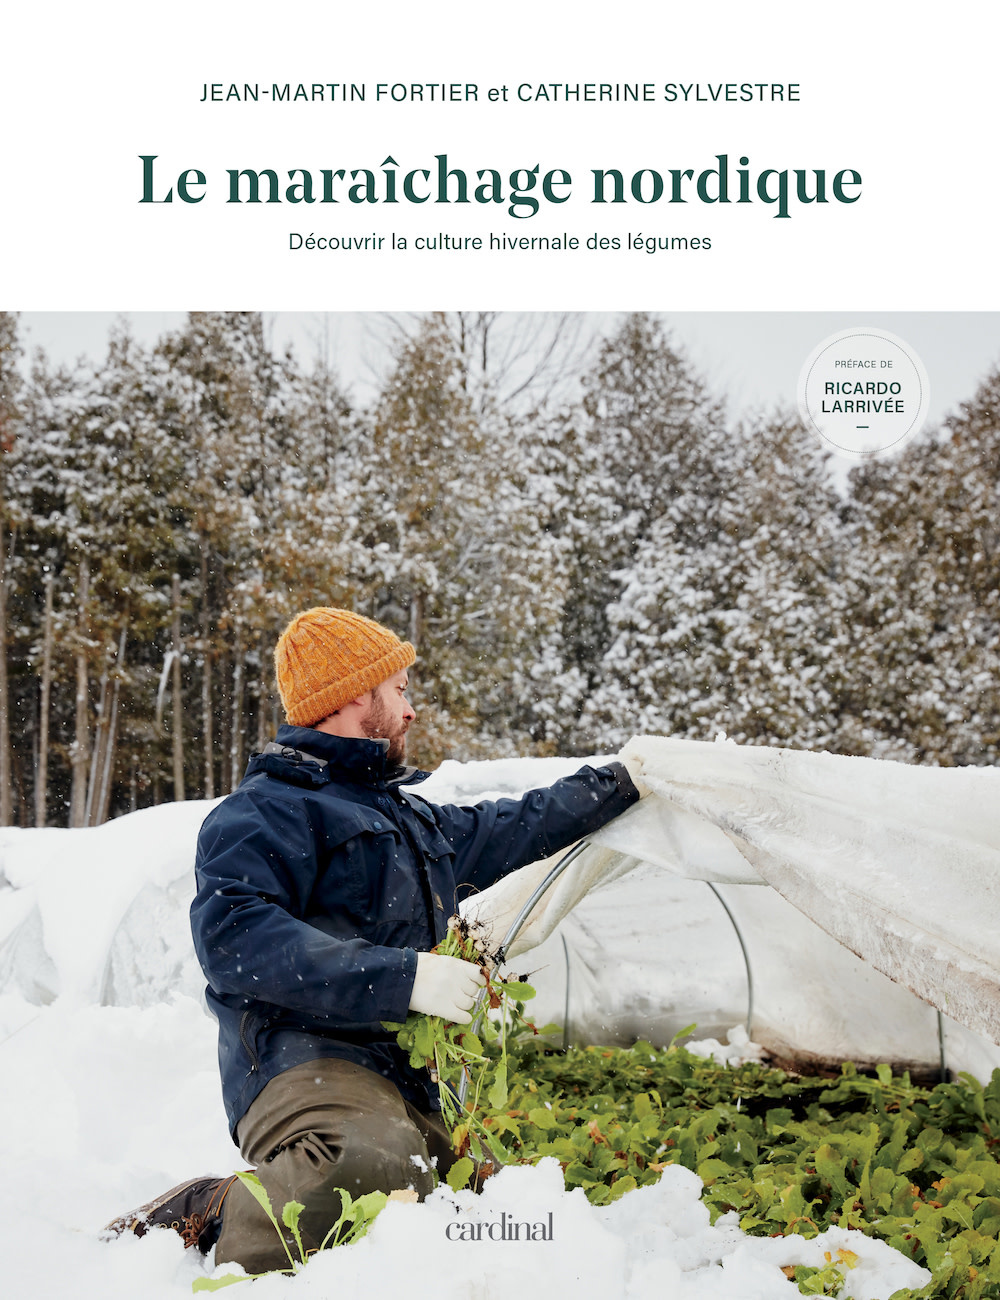 Le maraîchage nordique - Jean-Martin Fortier et Catherine Sylvestre - 2021